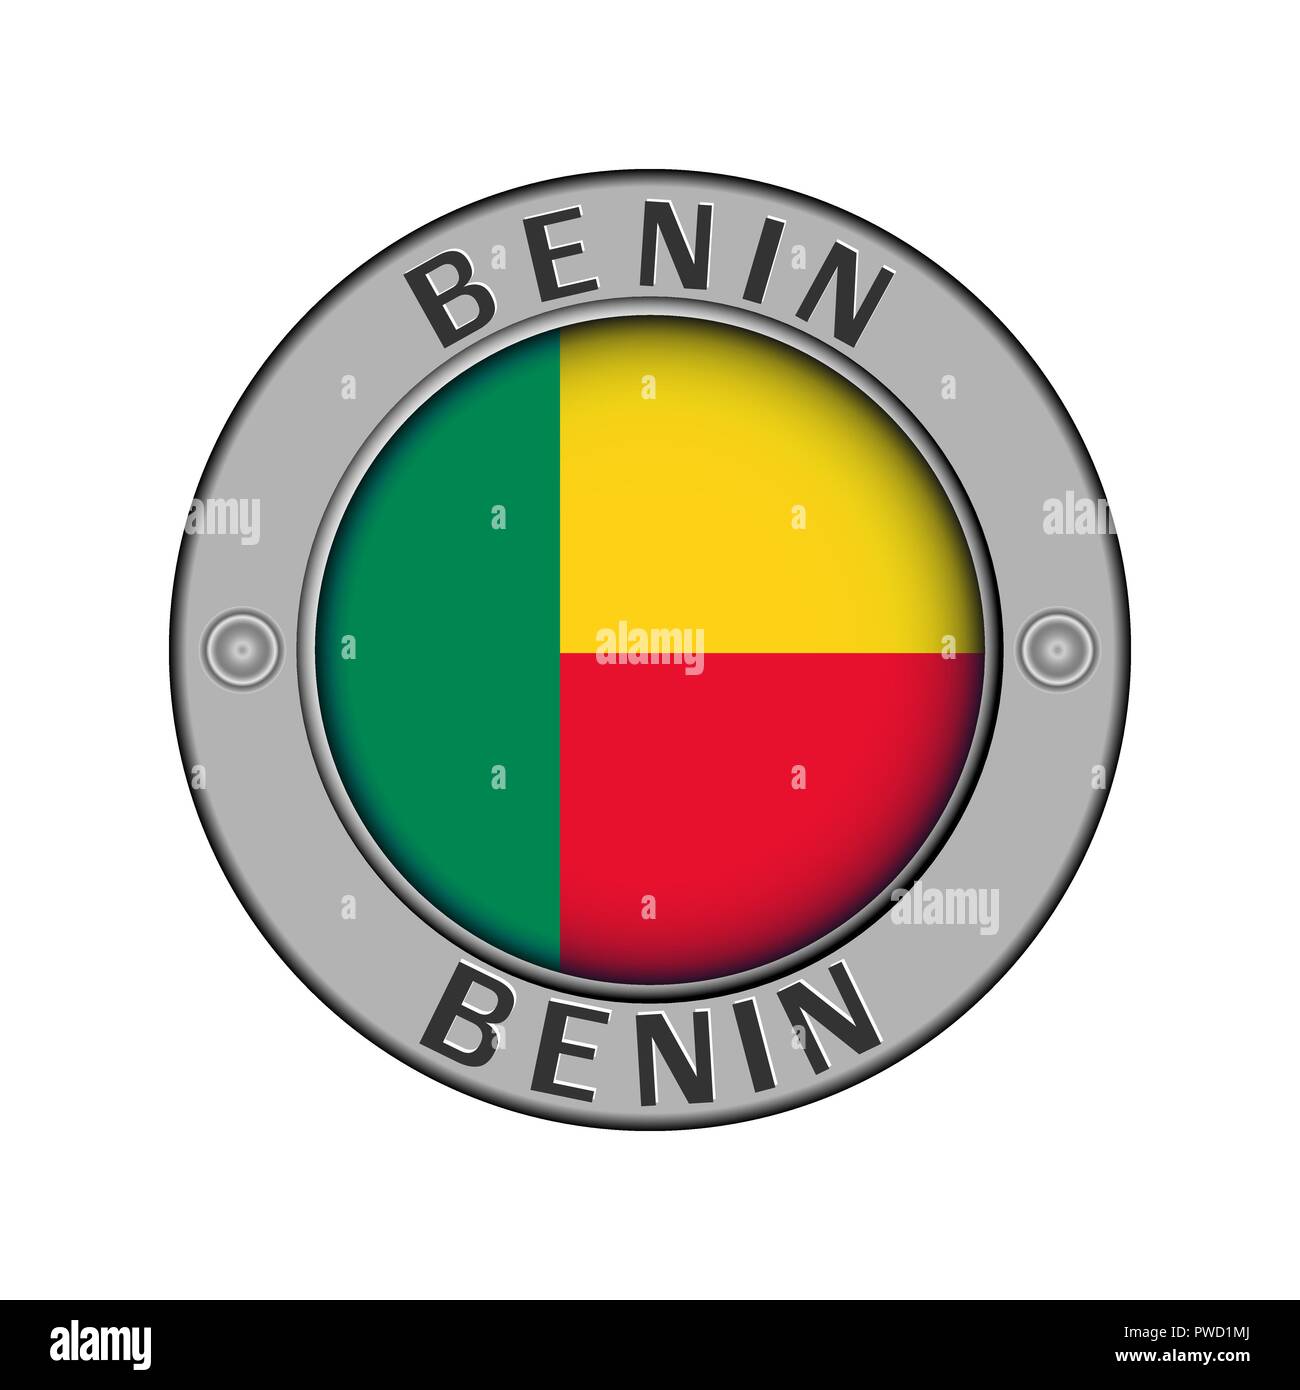 Rotondo di metallo medaglione con il nome del paese del Benin e un indicatore rotondo nel centro Illustrazione Vettoriale